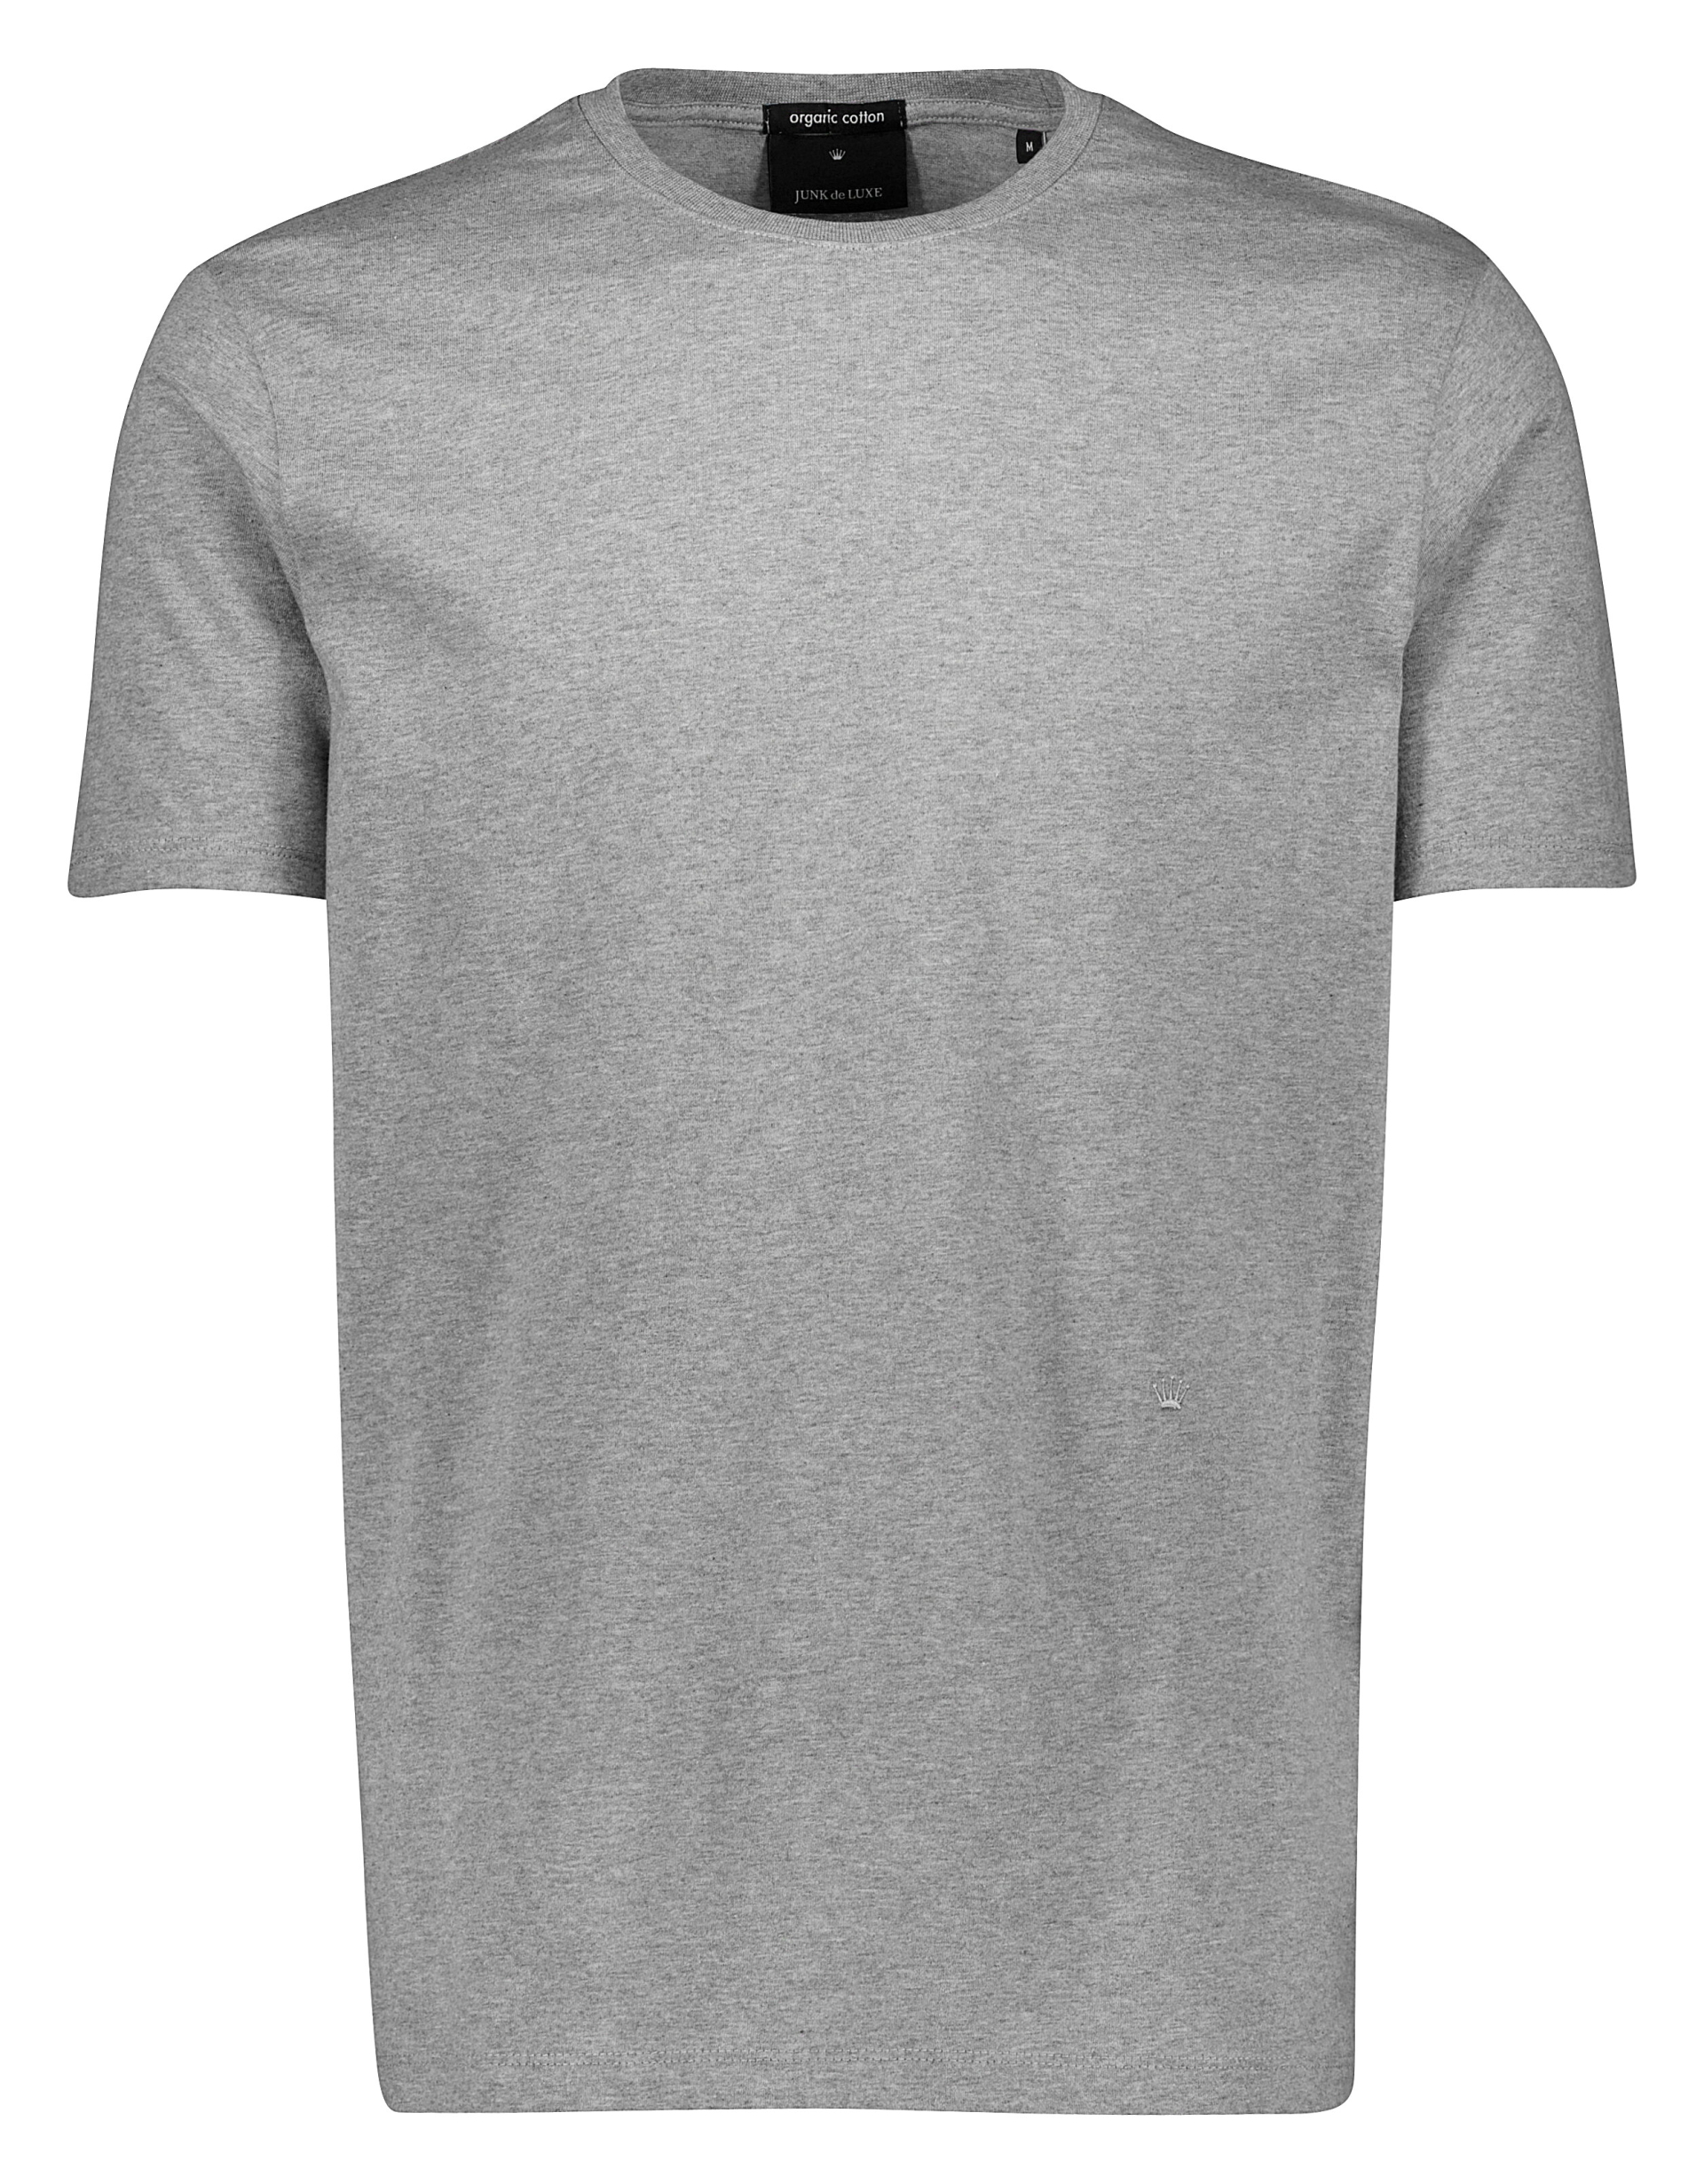 Junk de Luxe T-shirt grå / grey mel